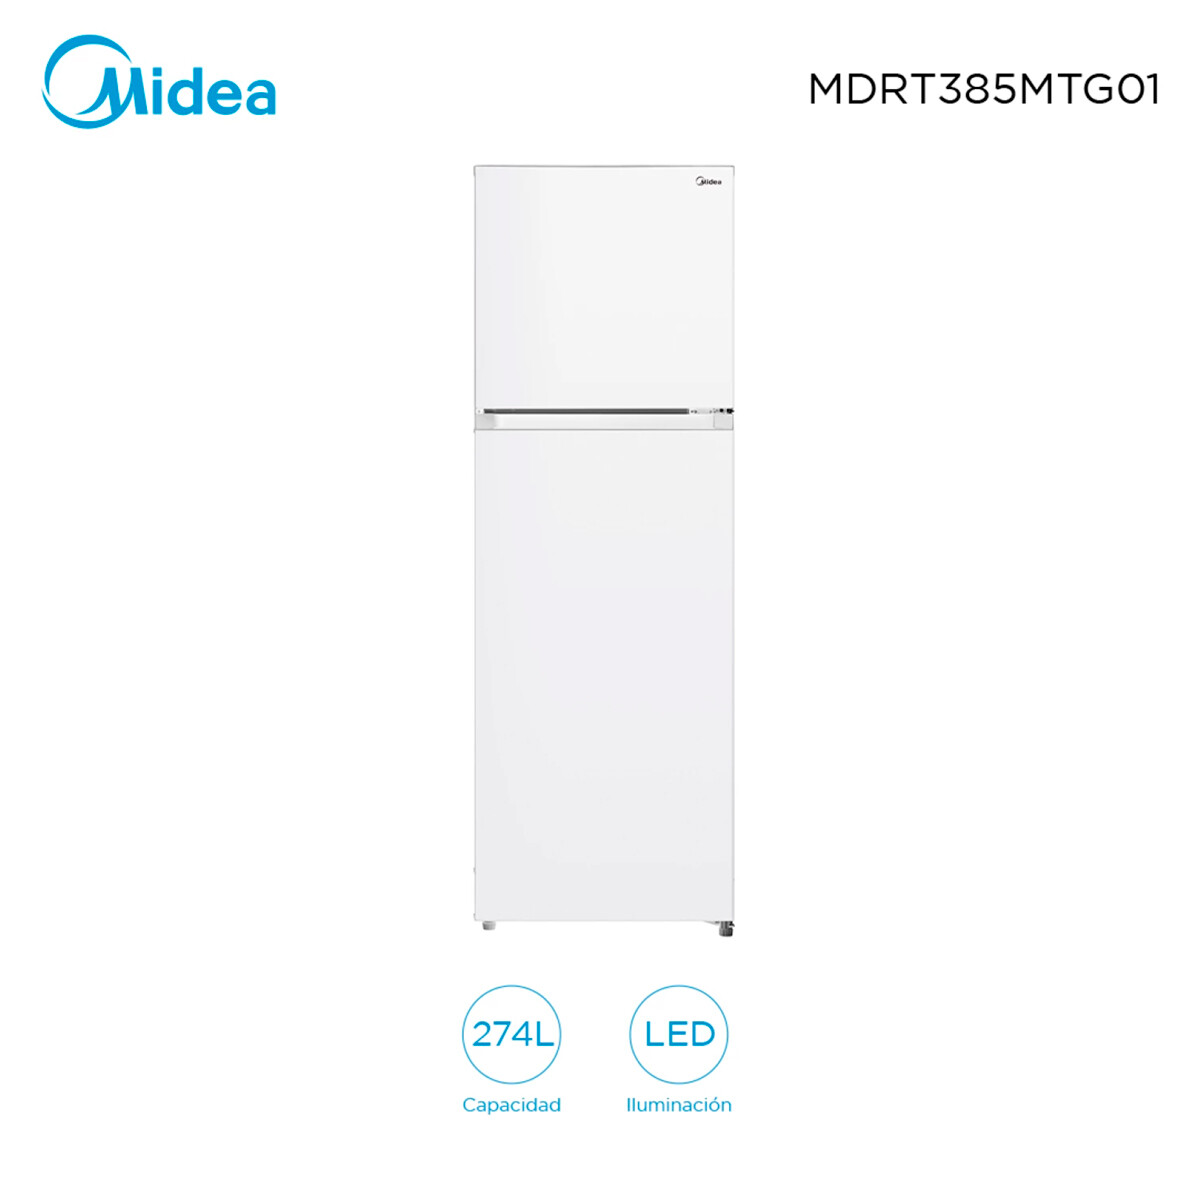 Refrigerador 274 Lts. Midea Mdrt385mtg01 